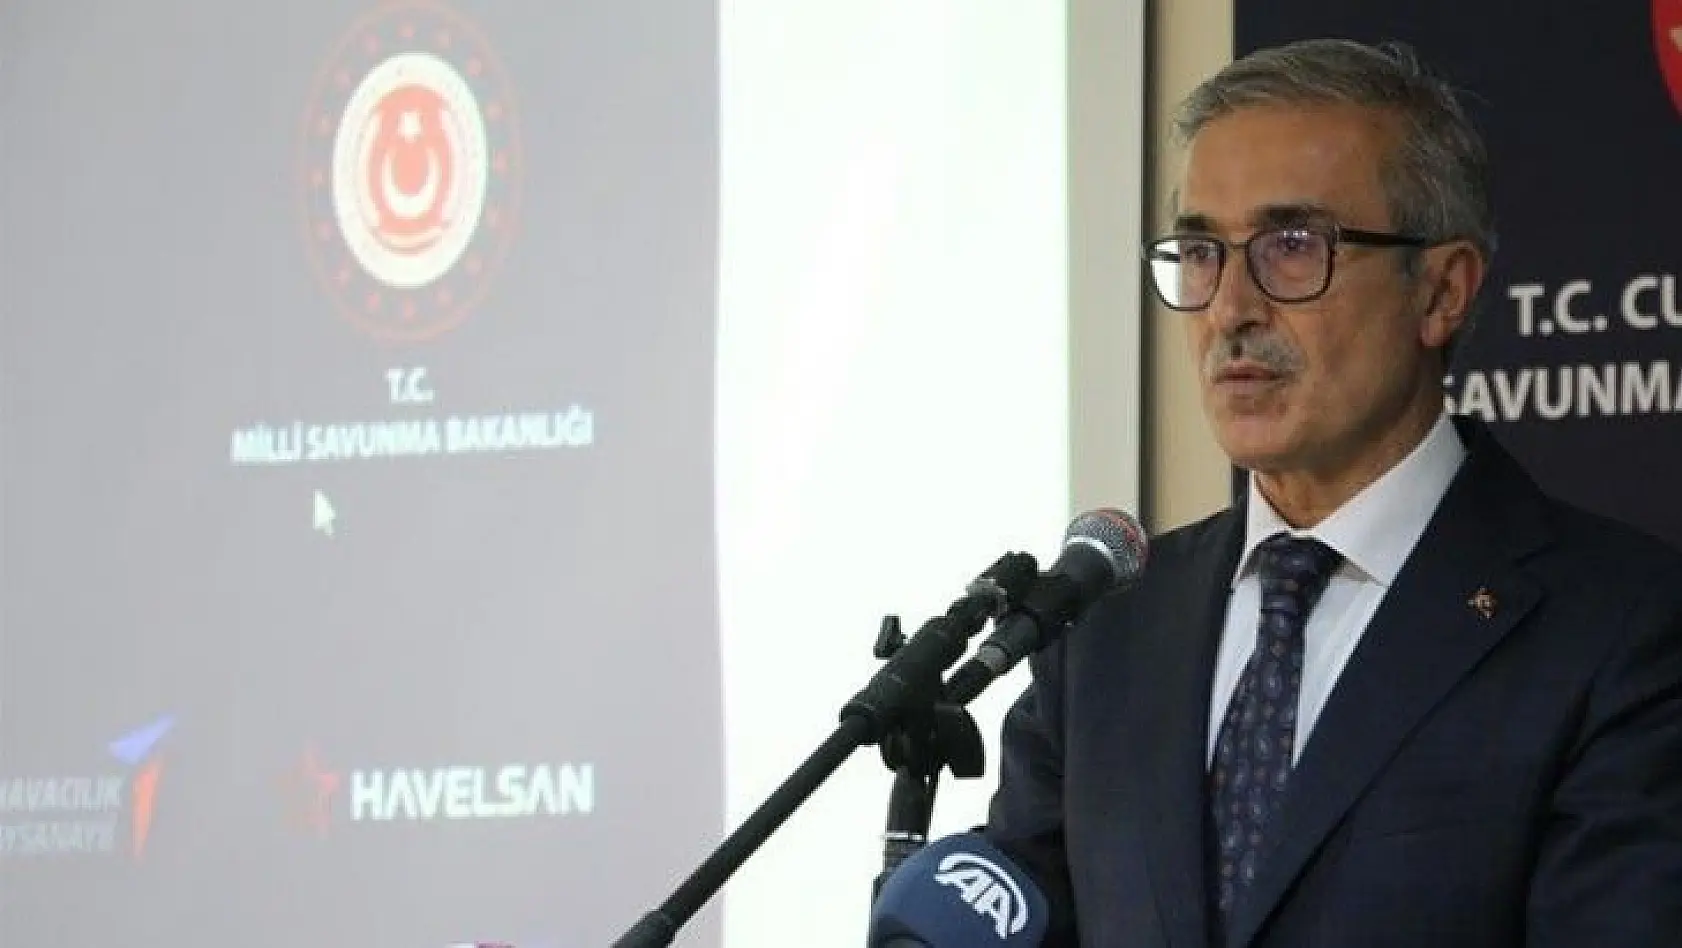 Savunma Sanayii Başkanı Demir: 'Gücü olmayan ve kullanmayan milletler ayakta kalamaz'